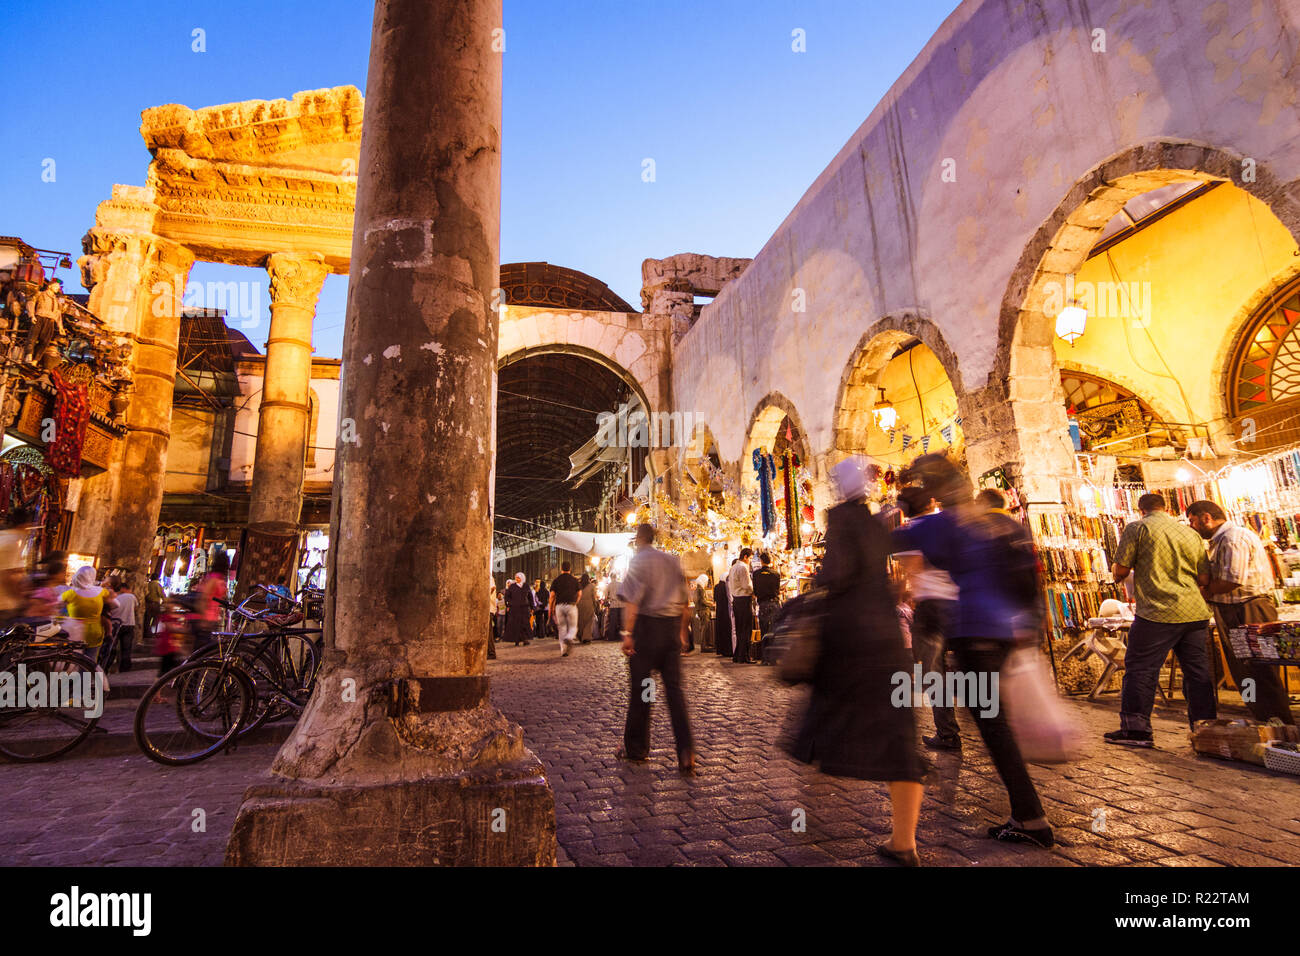 Damasco, Siria : passanti presso i ruderi del romano Tempio di Giove (I secolo A.C. al iv secolo ce) all'ingresso di Al-Hamidiyah Souq. Foto Stock